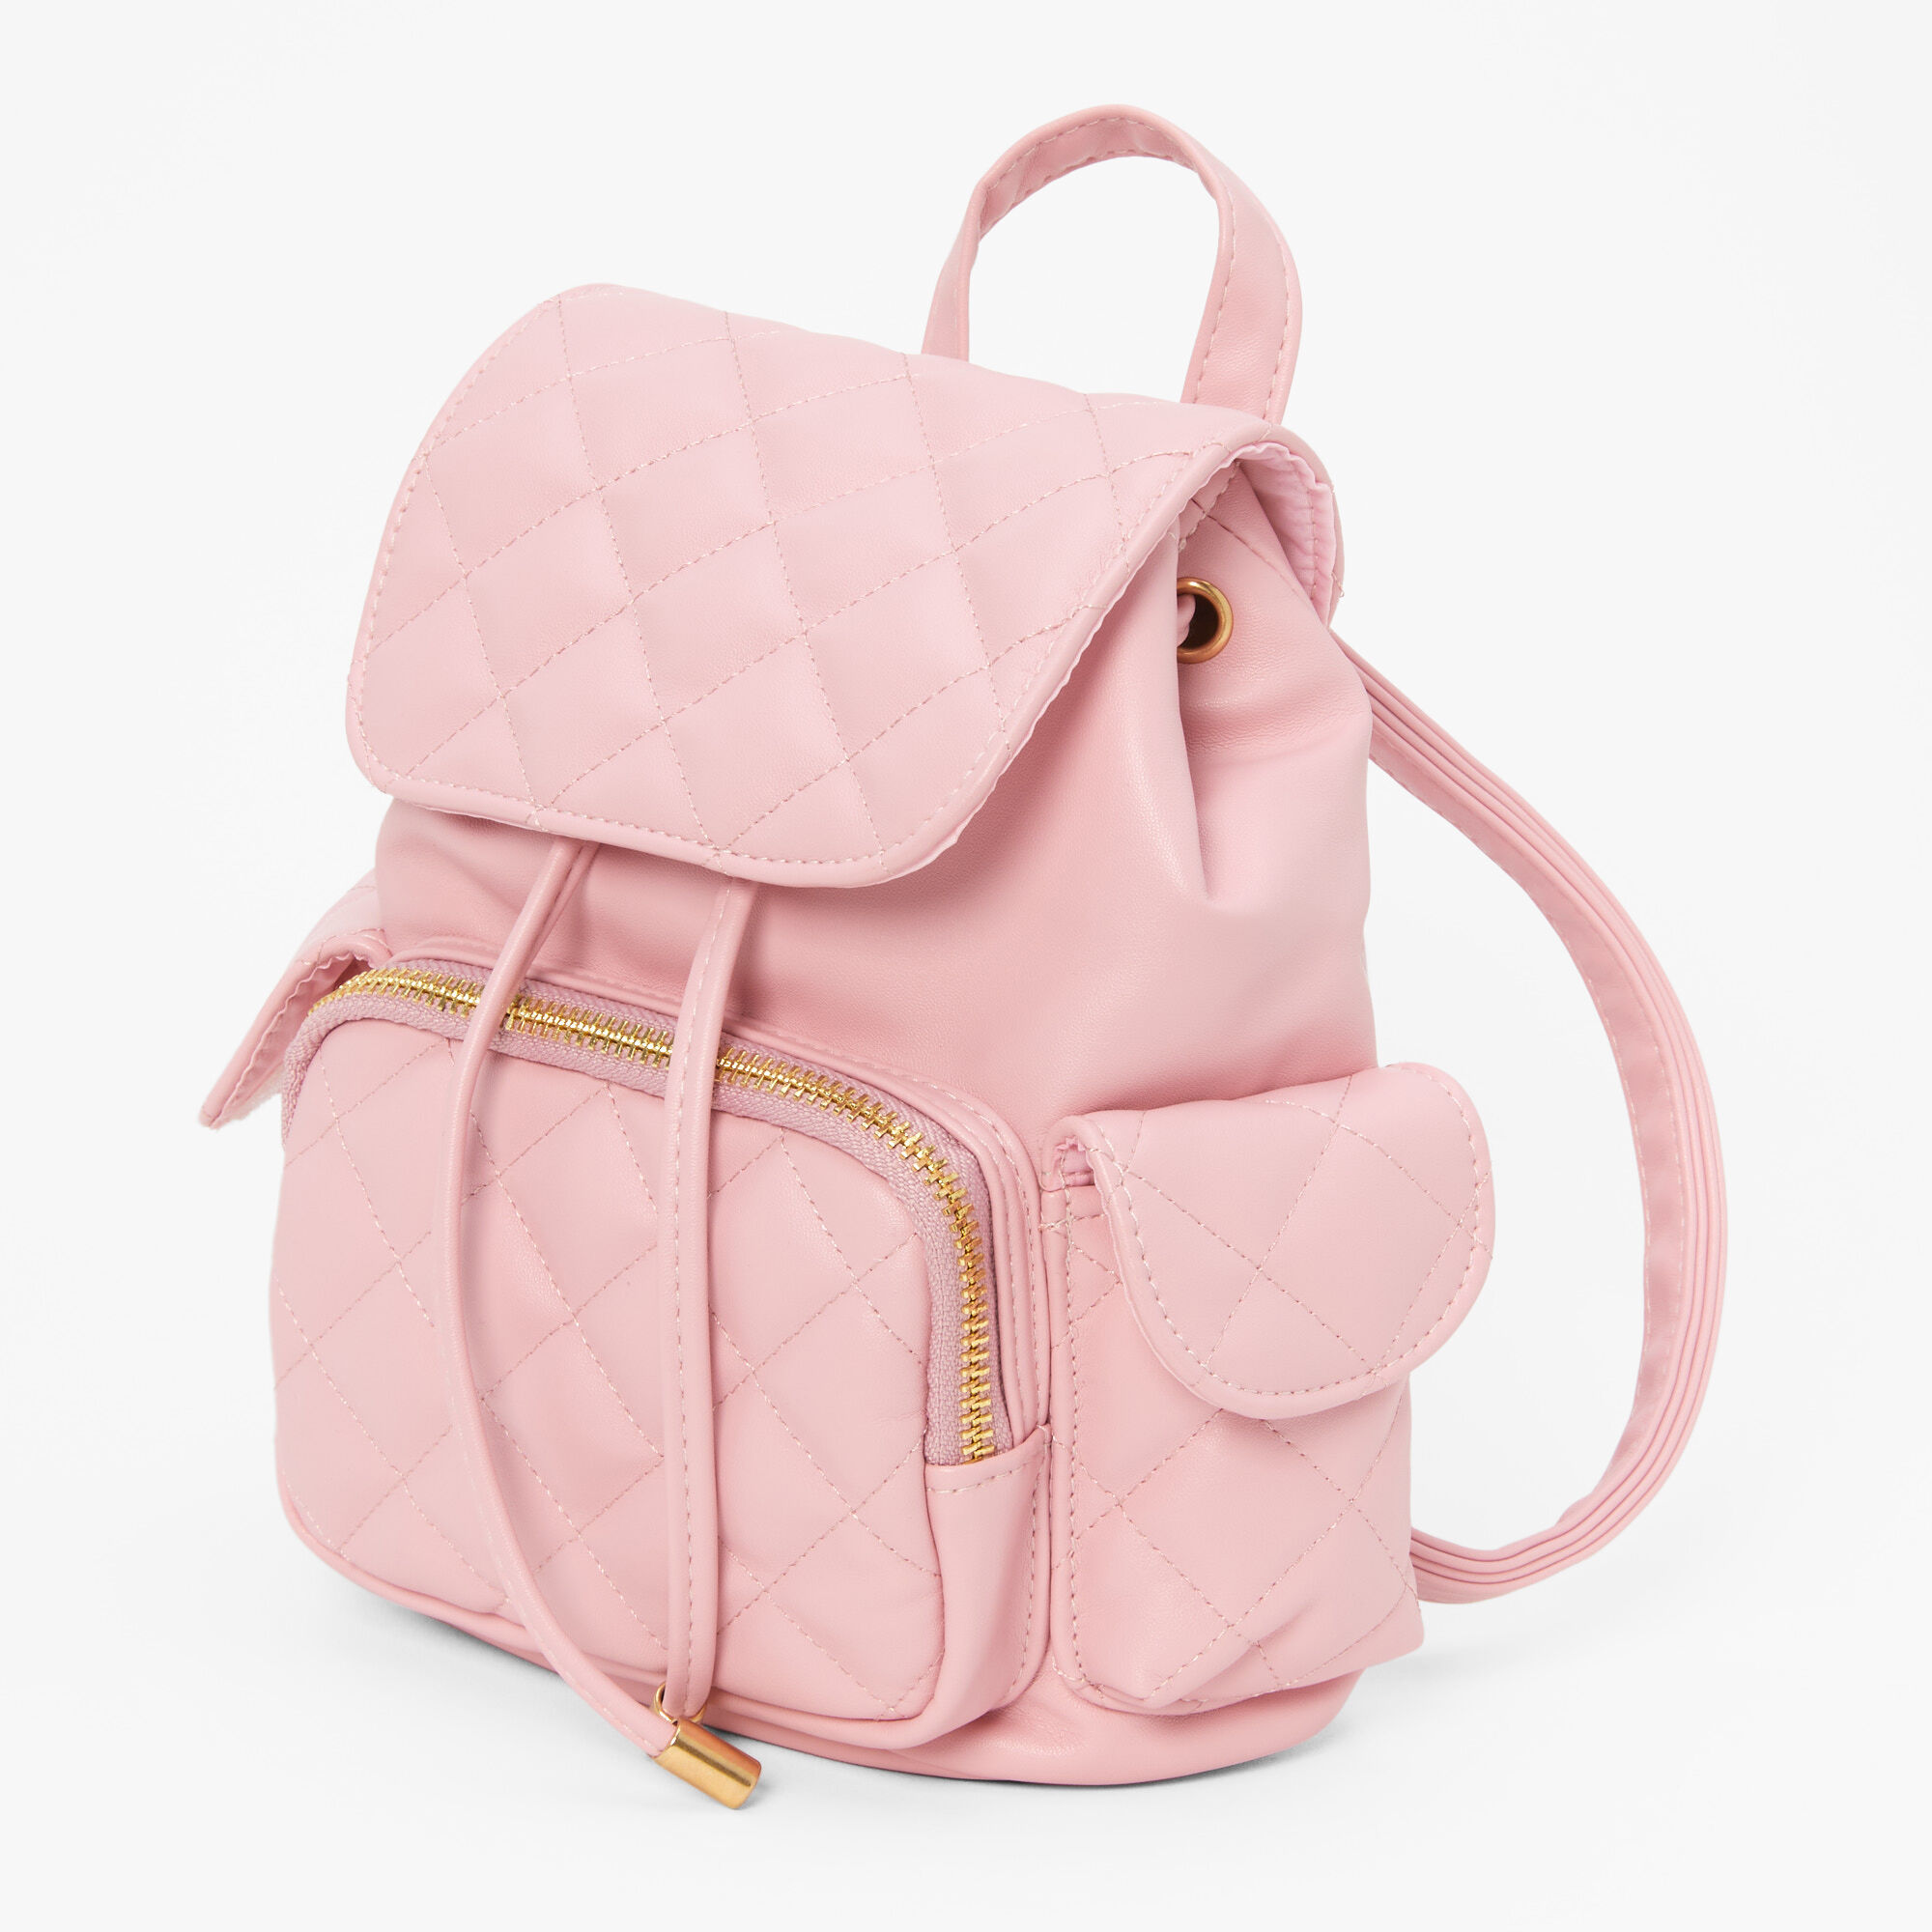 Askrykins Cute Flap Backpack Mini Bag in Pink